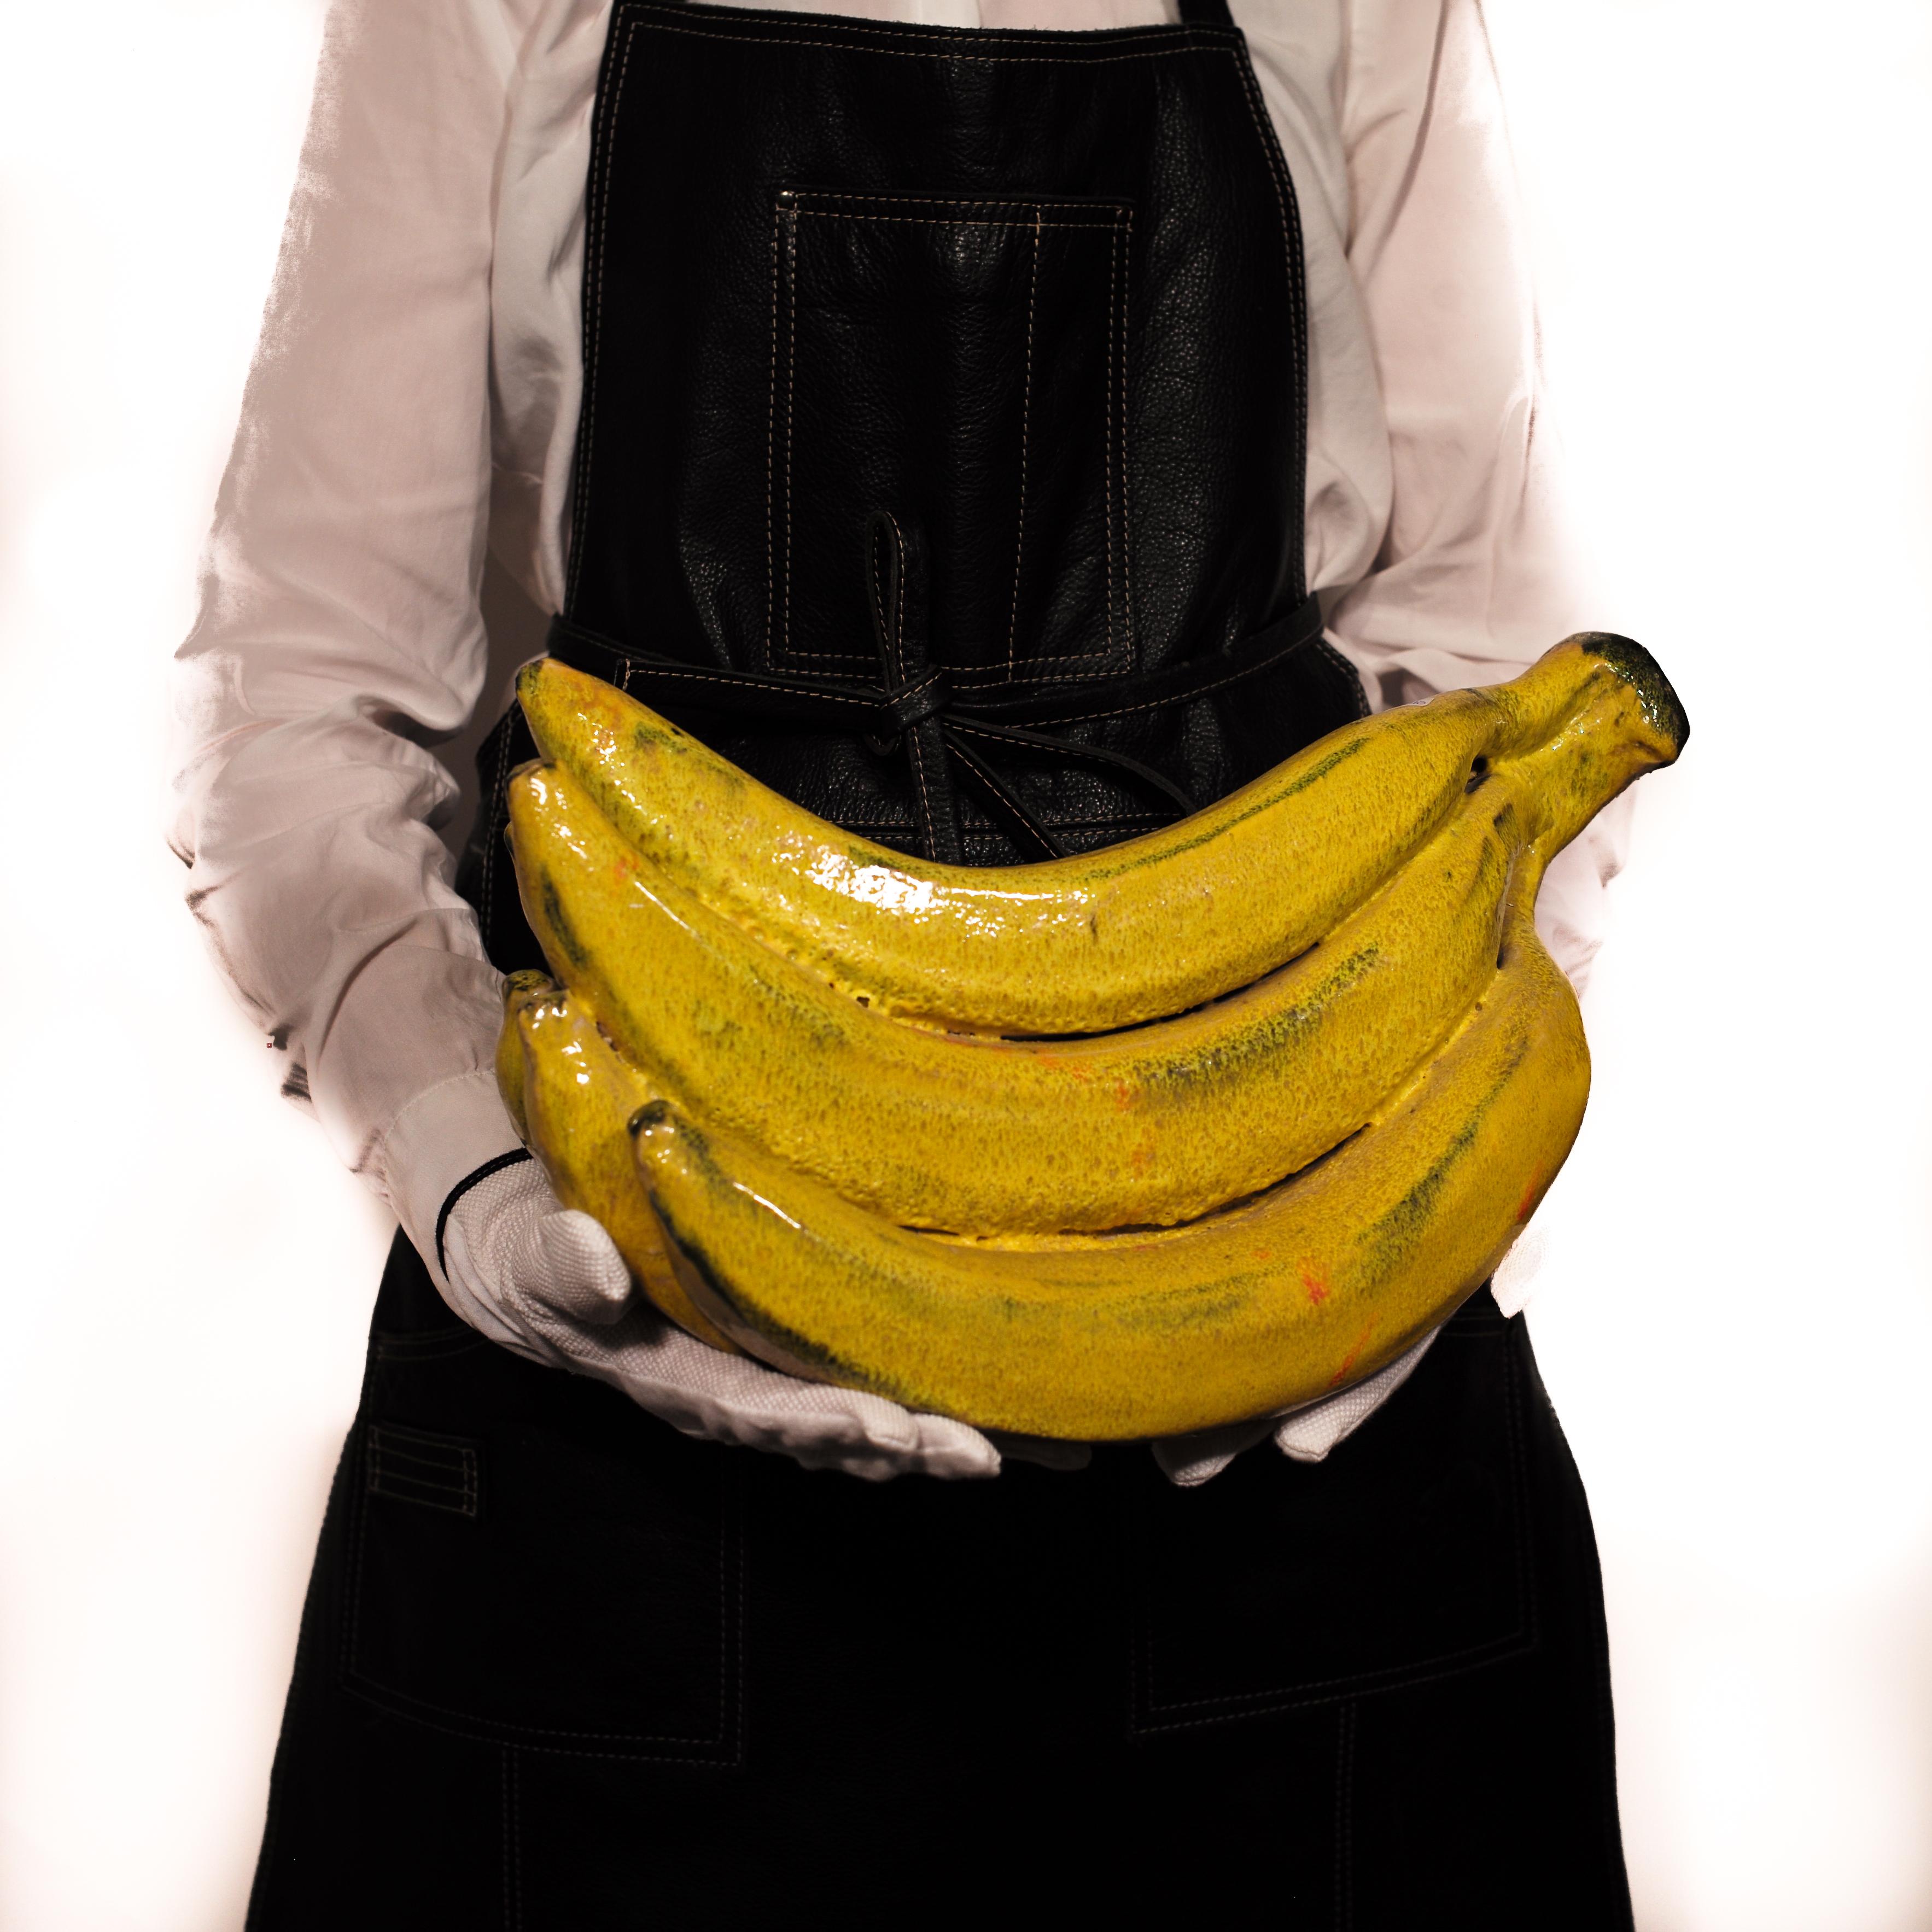 Banana, Large Sculpture made by Kjell Janson 1